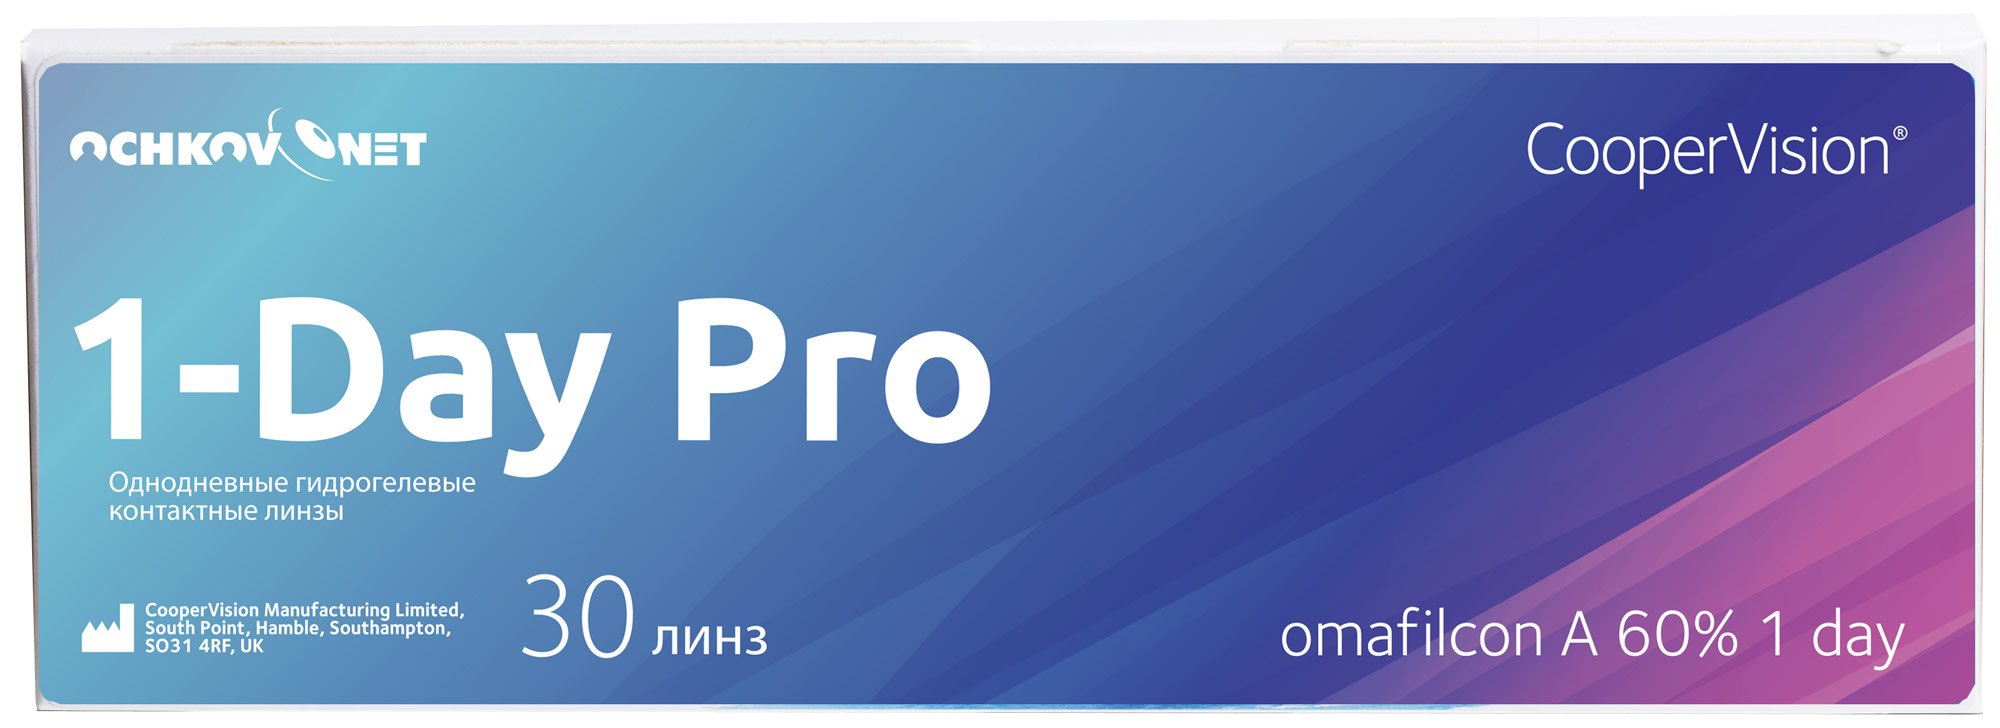 Купить Контактные линзы Ochkov.Net 1-Day Pro 30 линз 8.7, -10